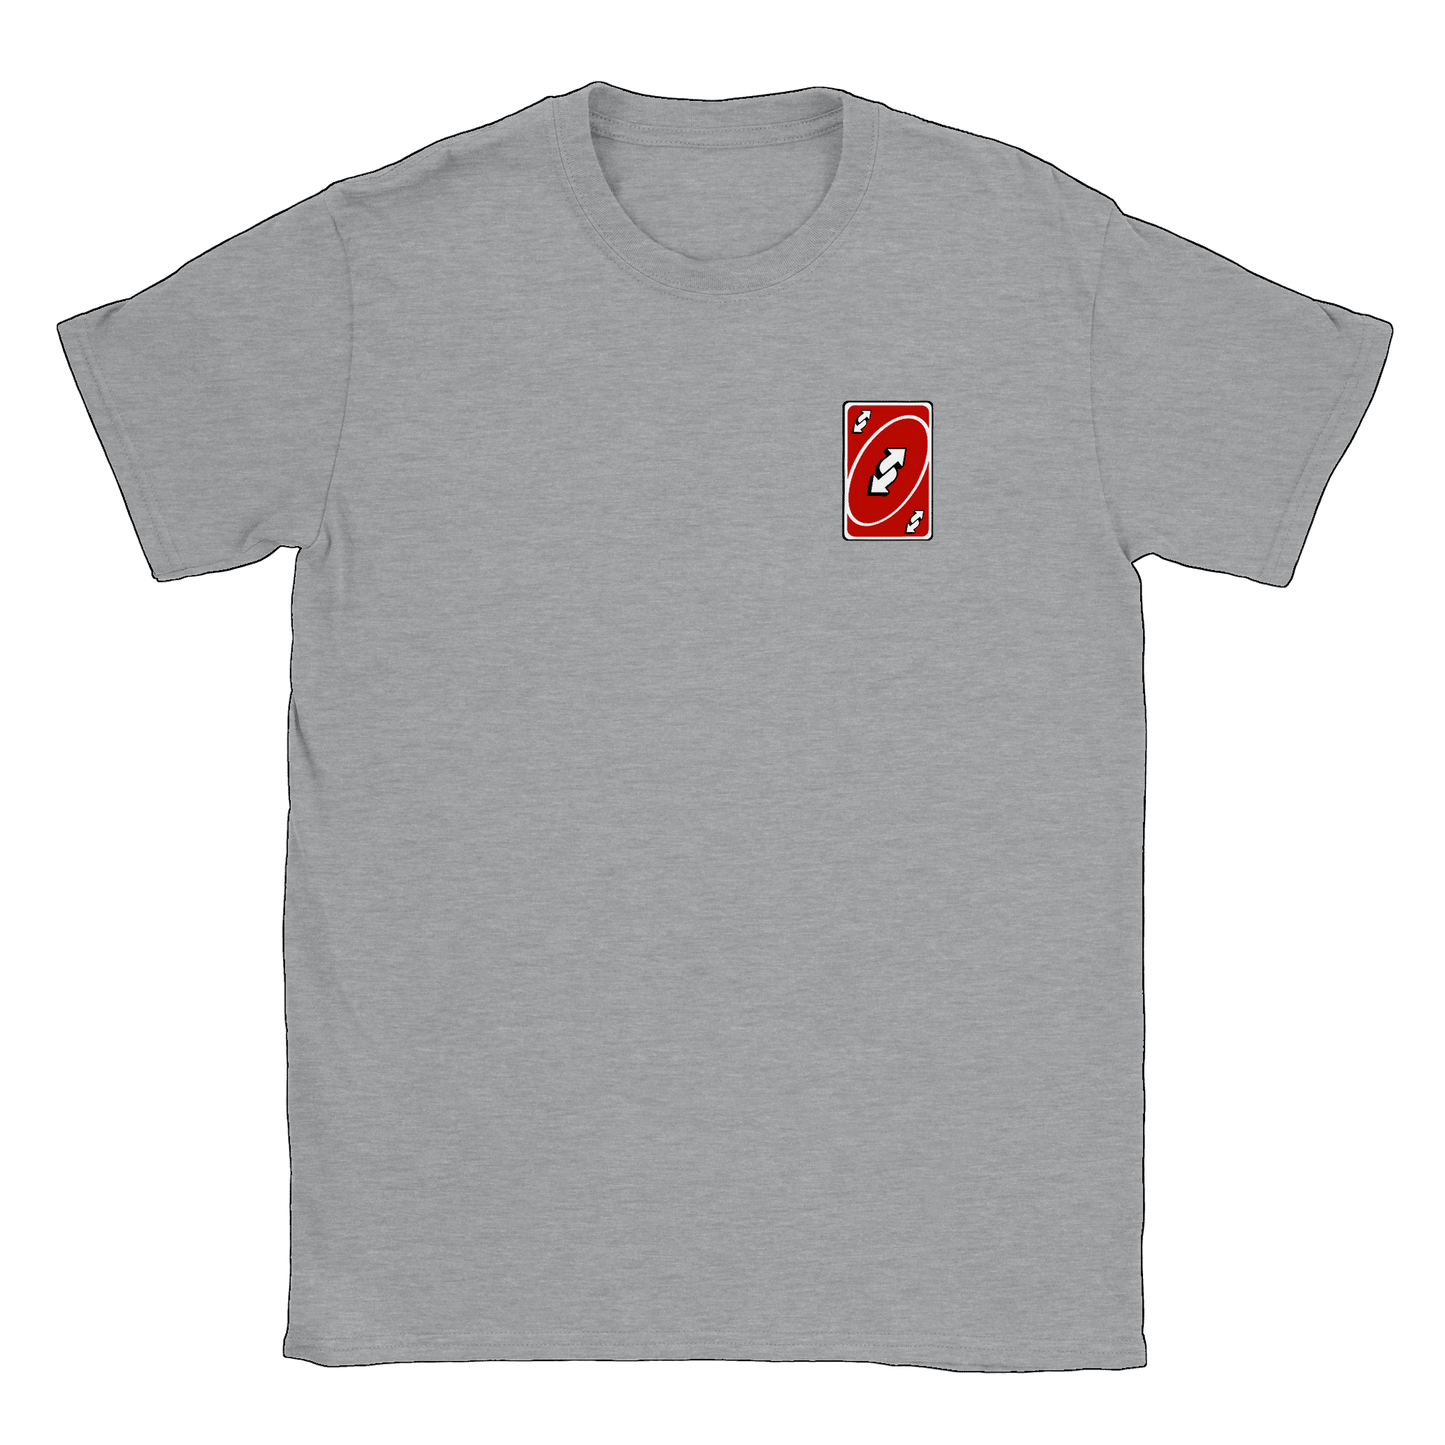 Vändkort litet - T-shirt Sports Grey